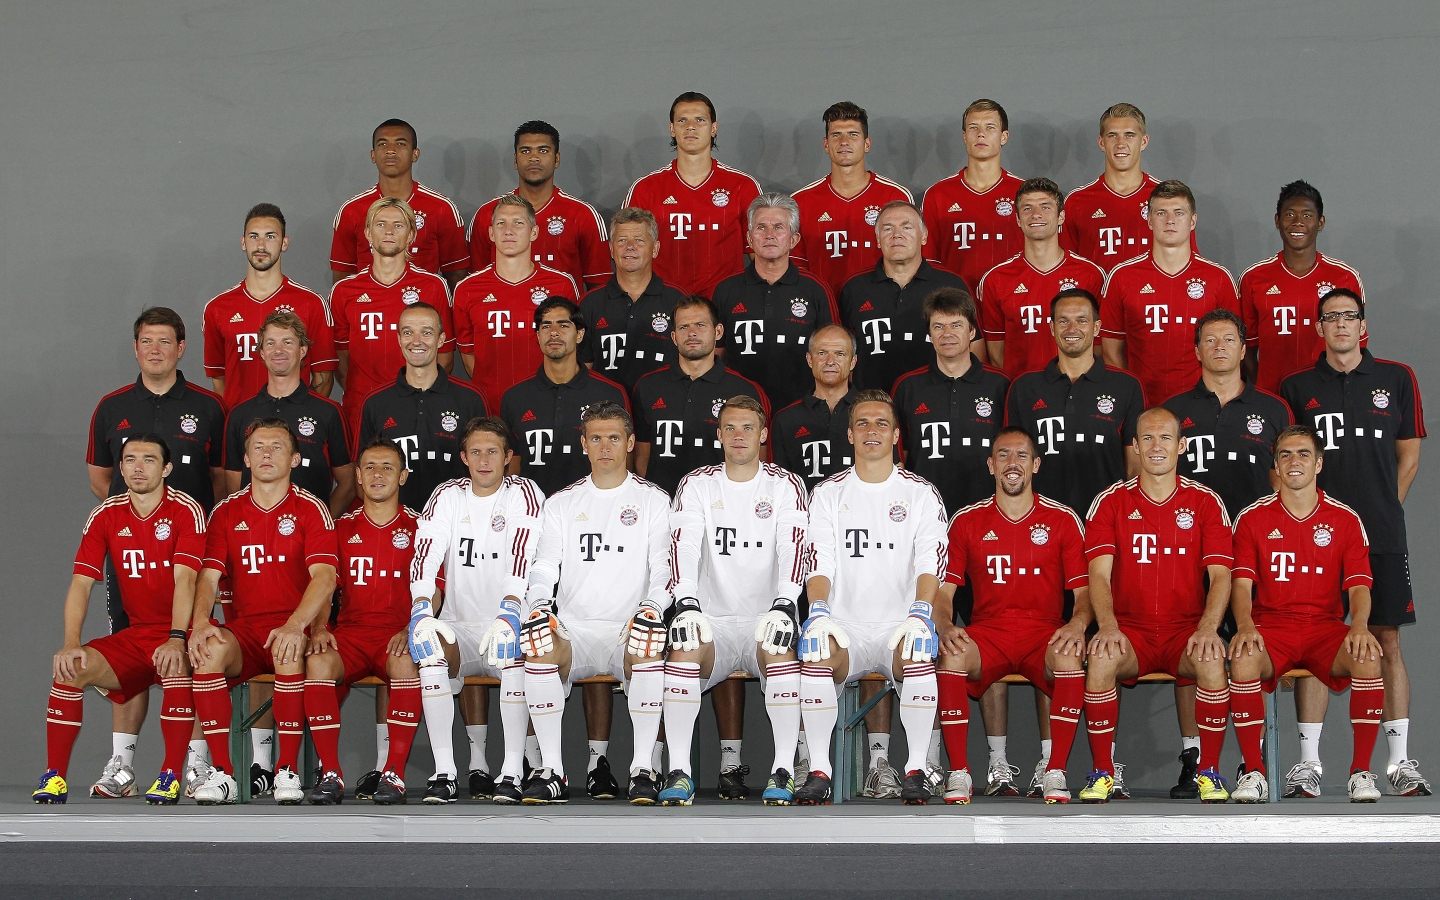 FC Bayern Munchen 2012 2013 for 1440 x 900 widescreen resolution